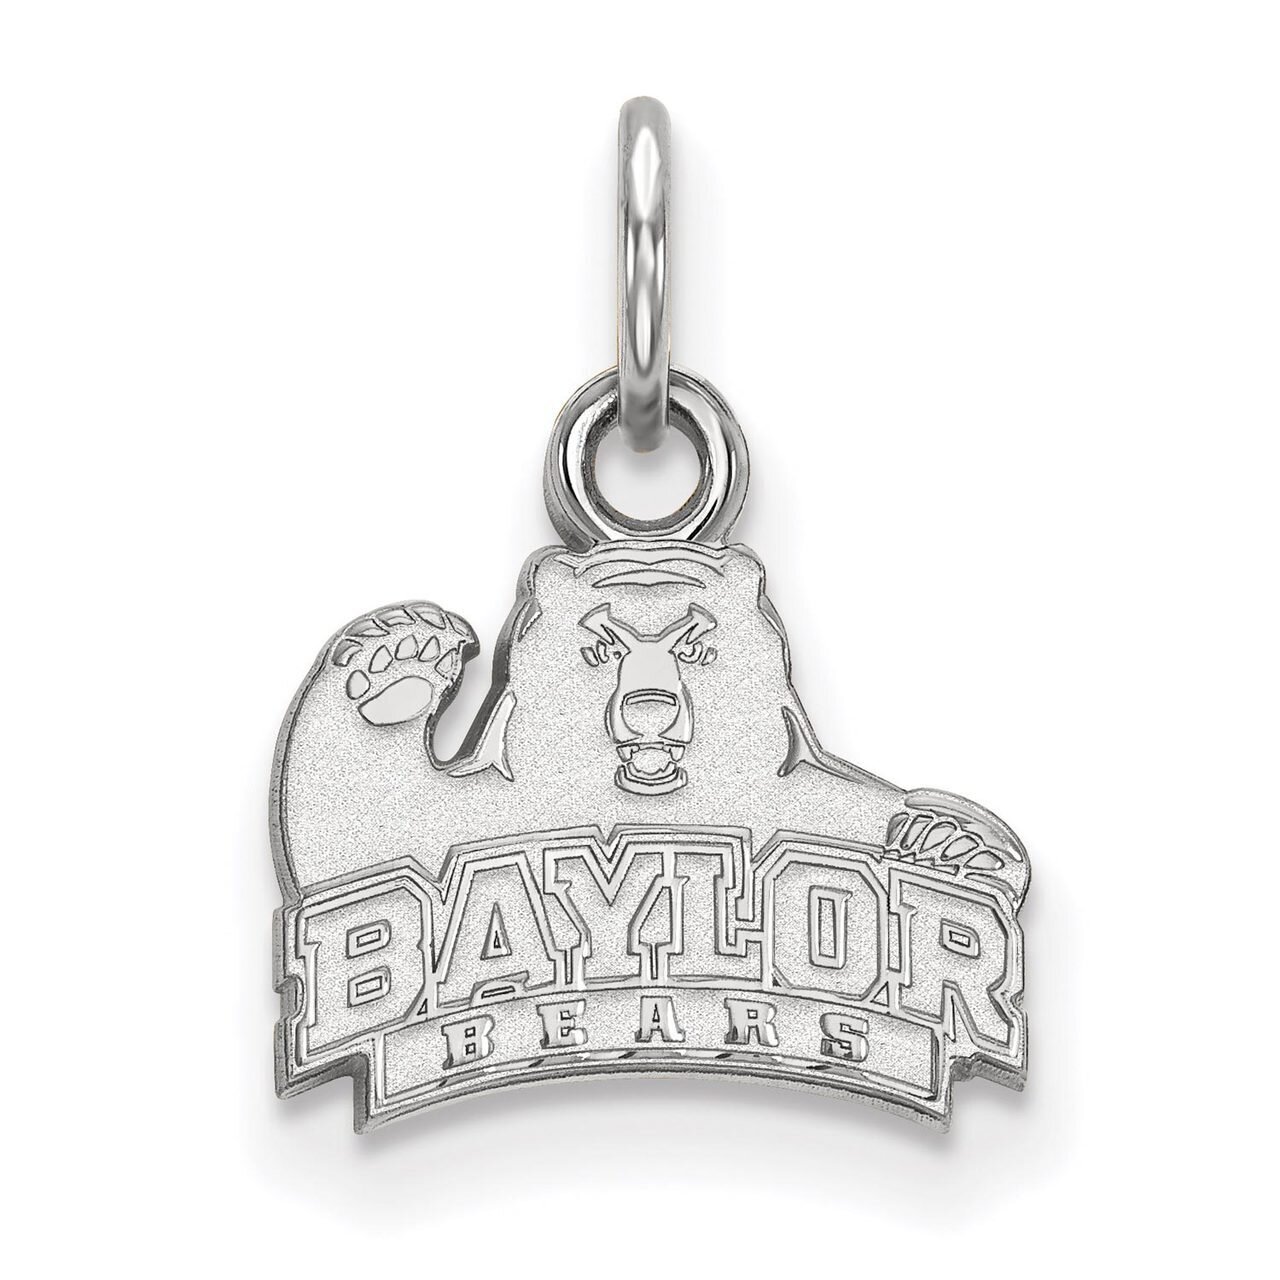 Baylor University Extra Small Pendant Sterling Silver SS001BU